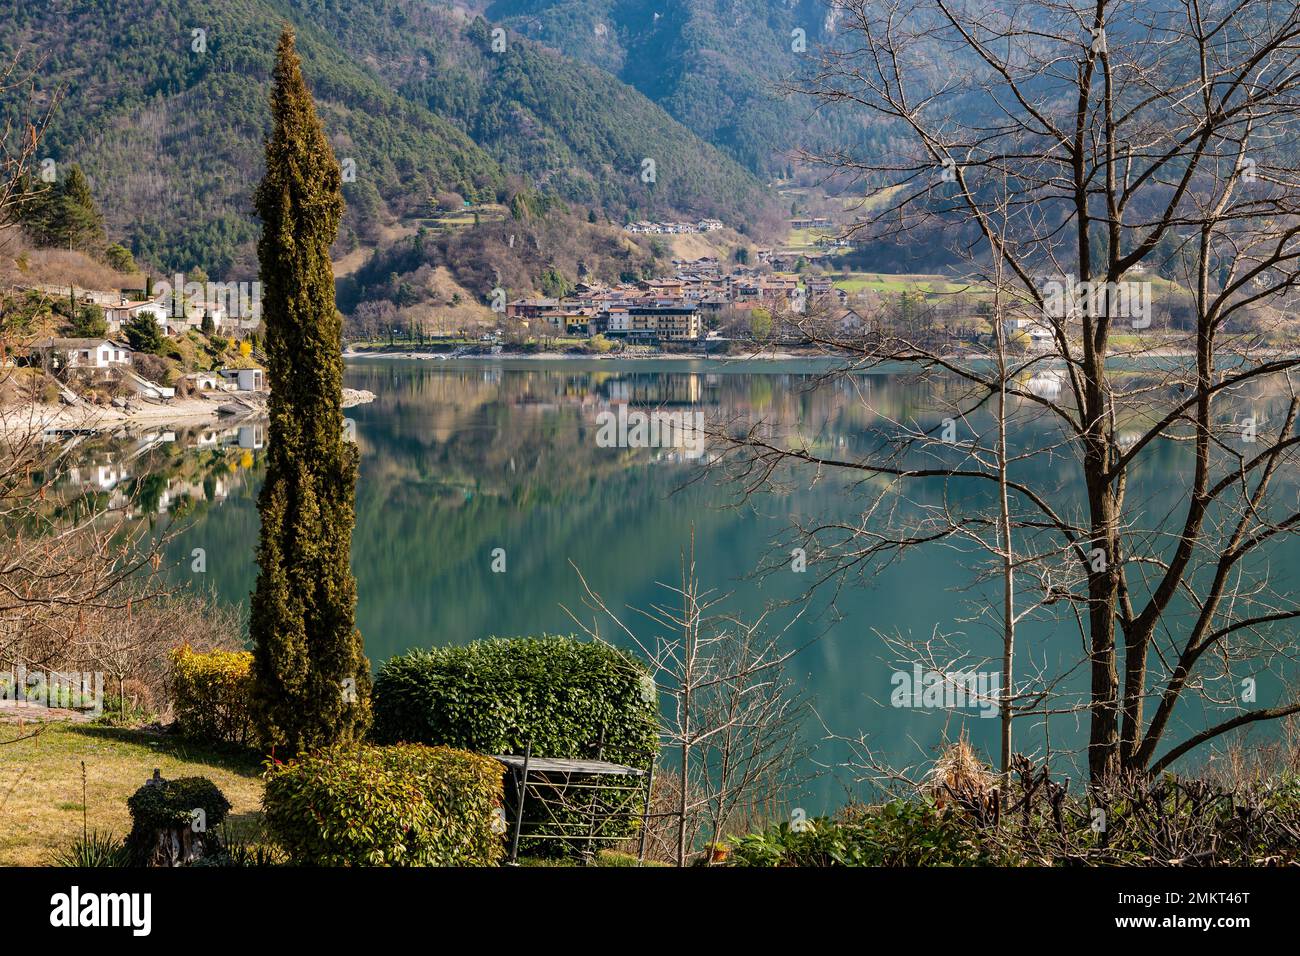 Lac de Ledro dans la vallée de Ledro. Paysage de printemps. Trento province, Trentin-Haut-Adige, nord de l'Italie, Europe Banque D'Images